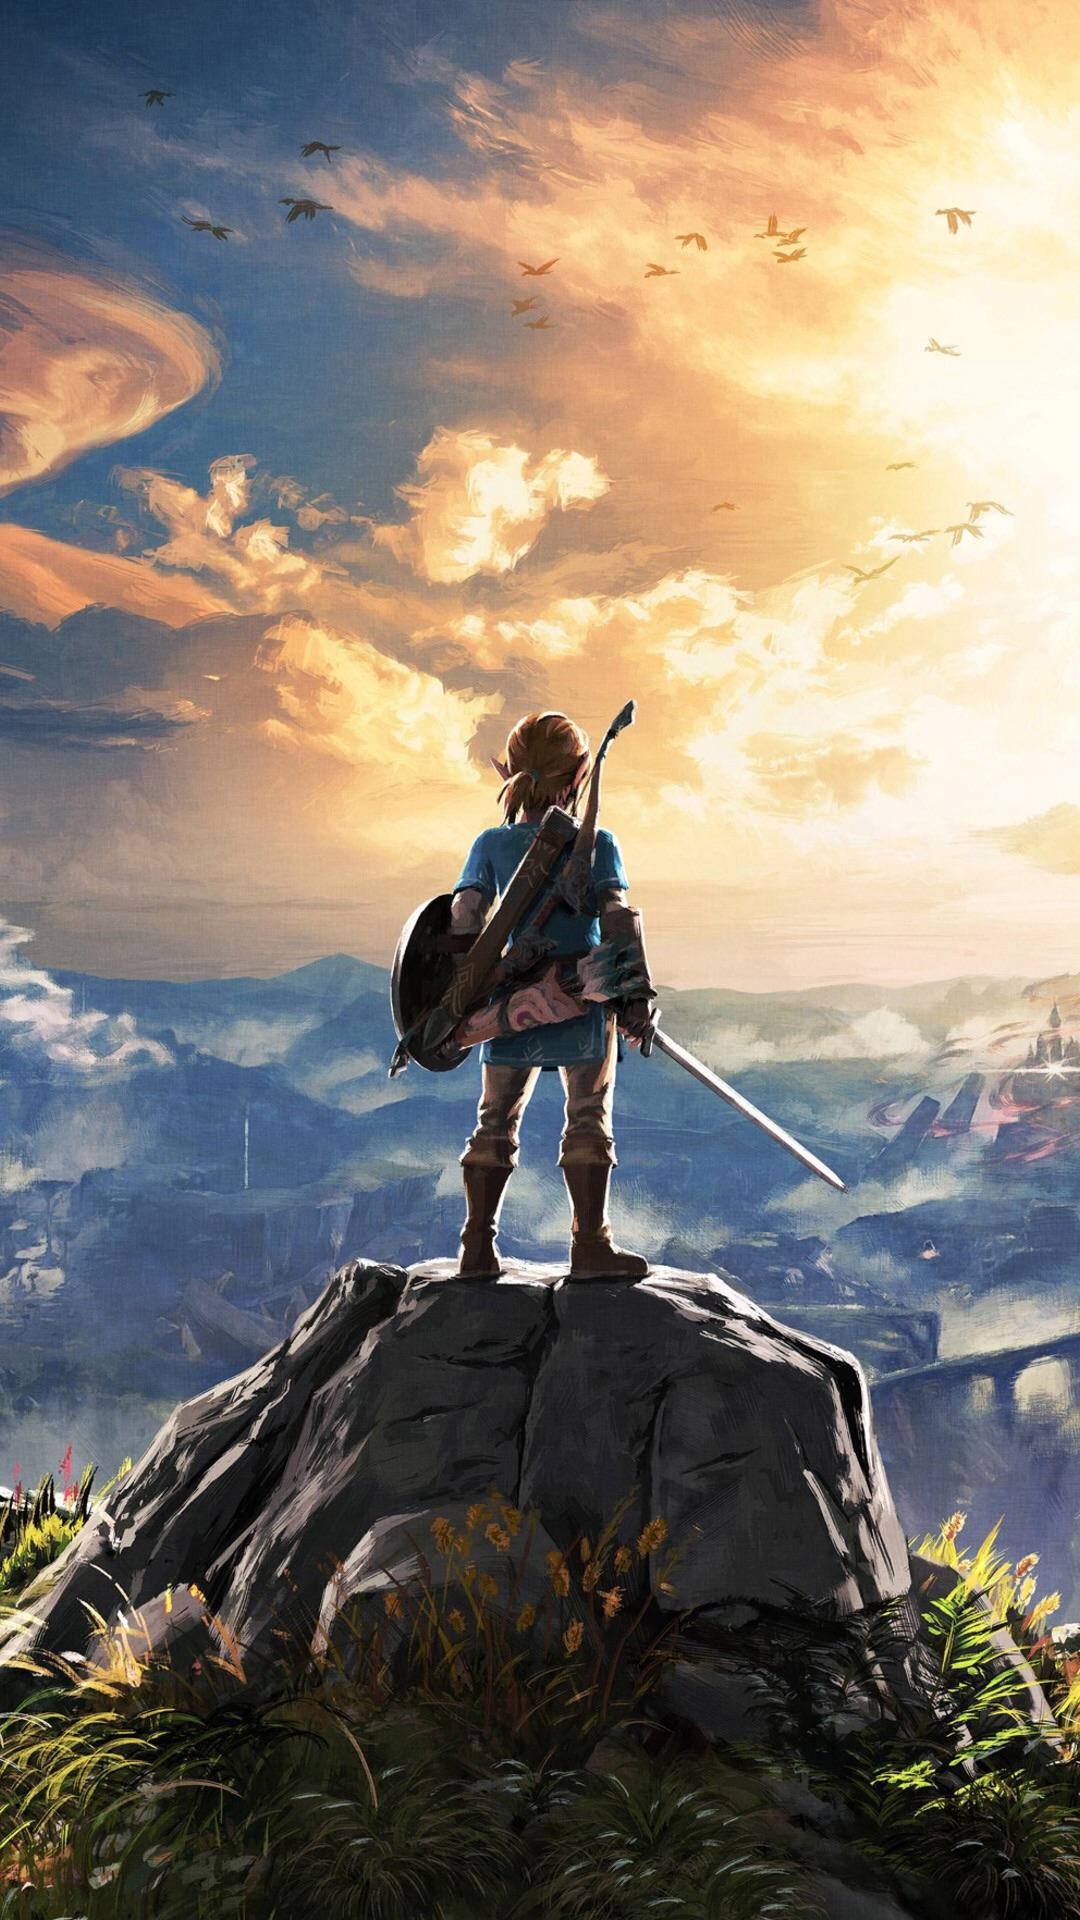 1080x1920 The Legend of Zelda: Breath of the Wild Wallpapers – BirchTree